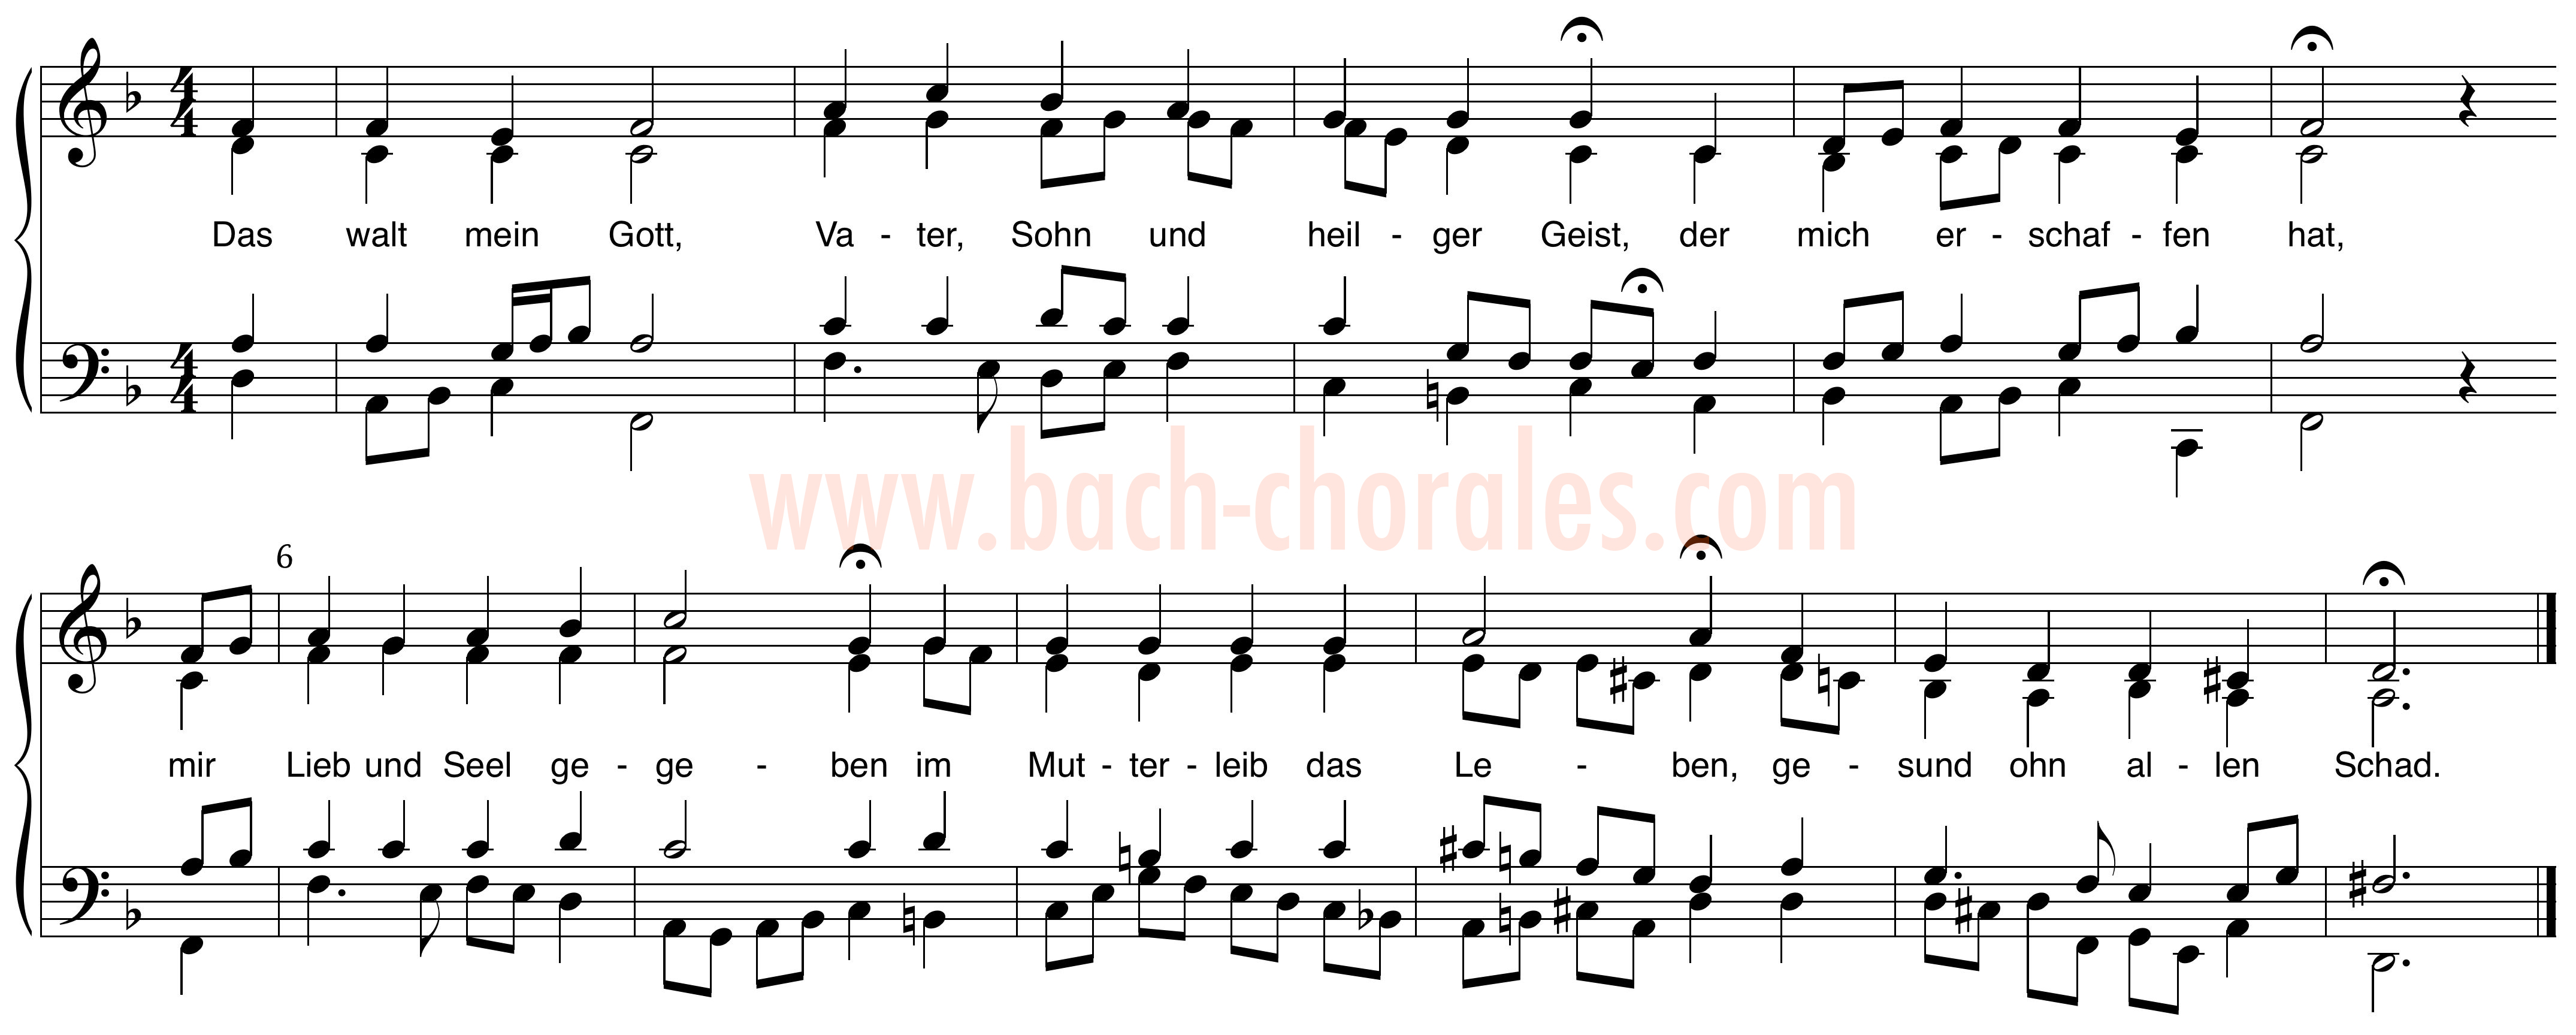 notenbeeld BWV 291 op https://www.bach-chorales.com/